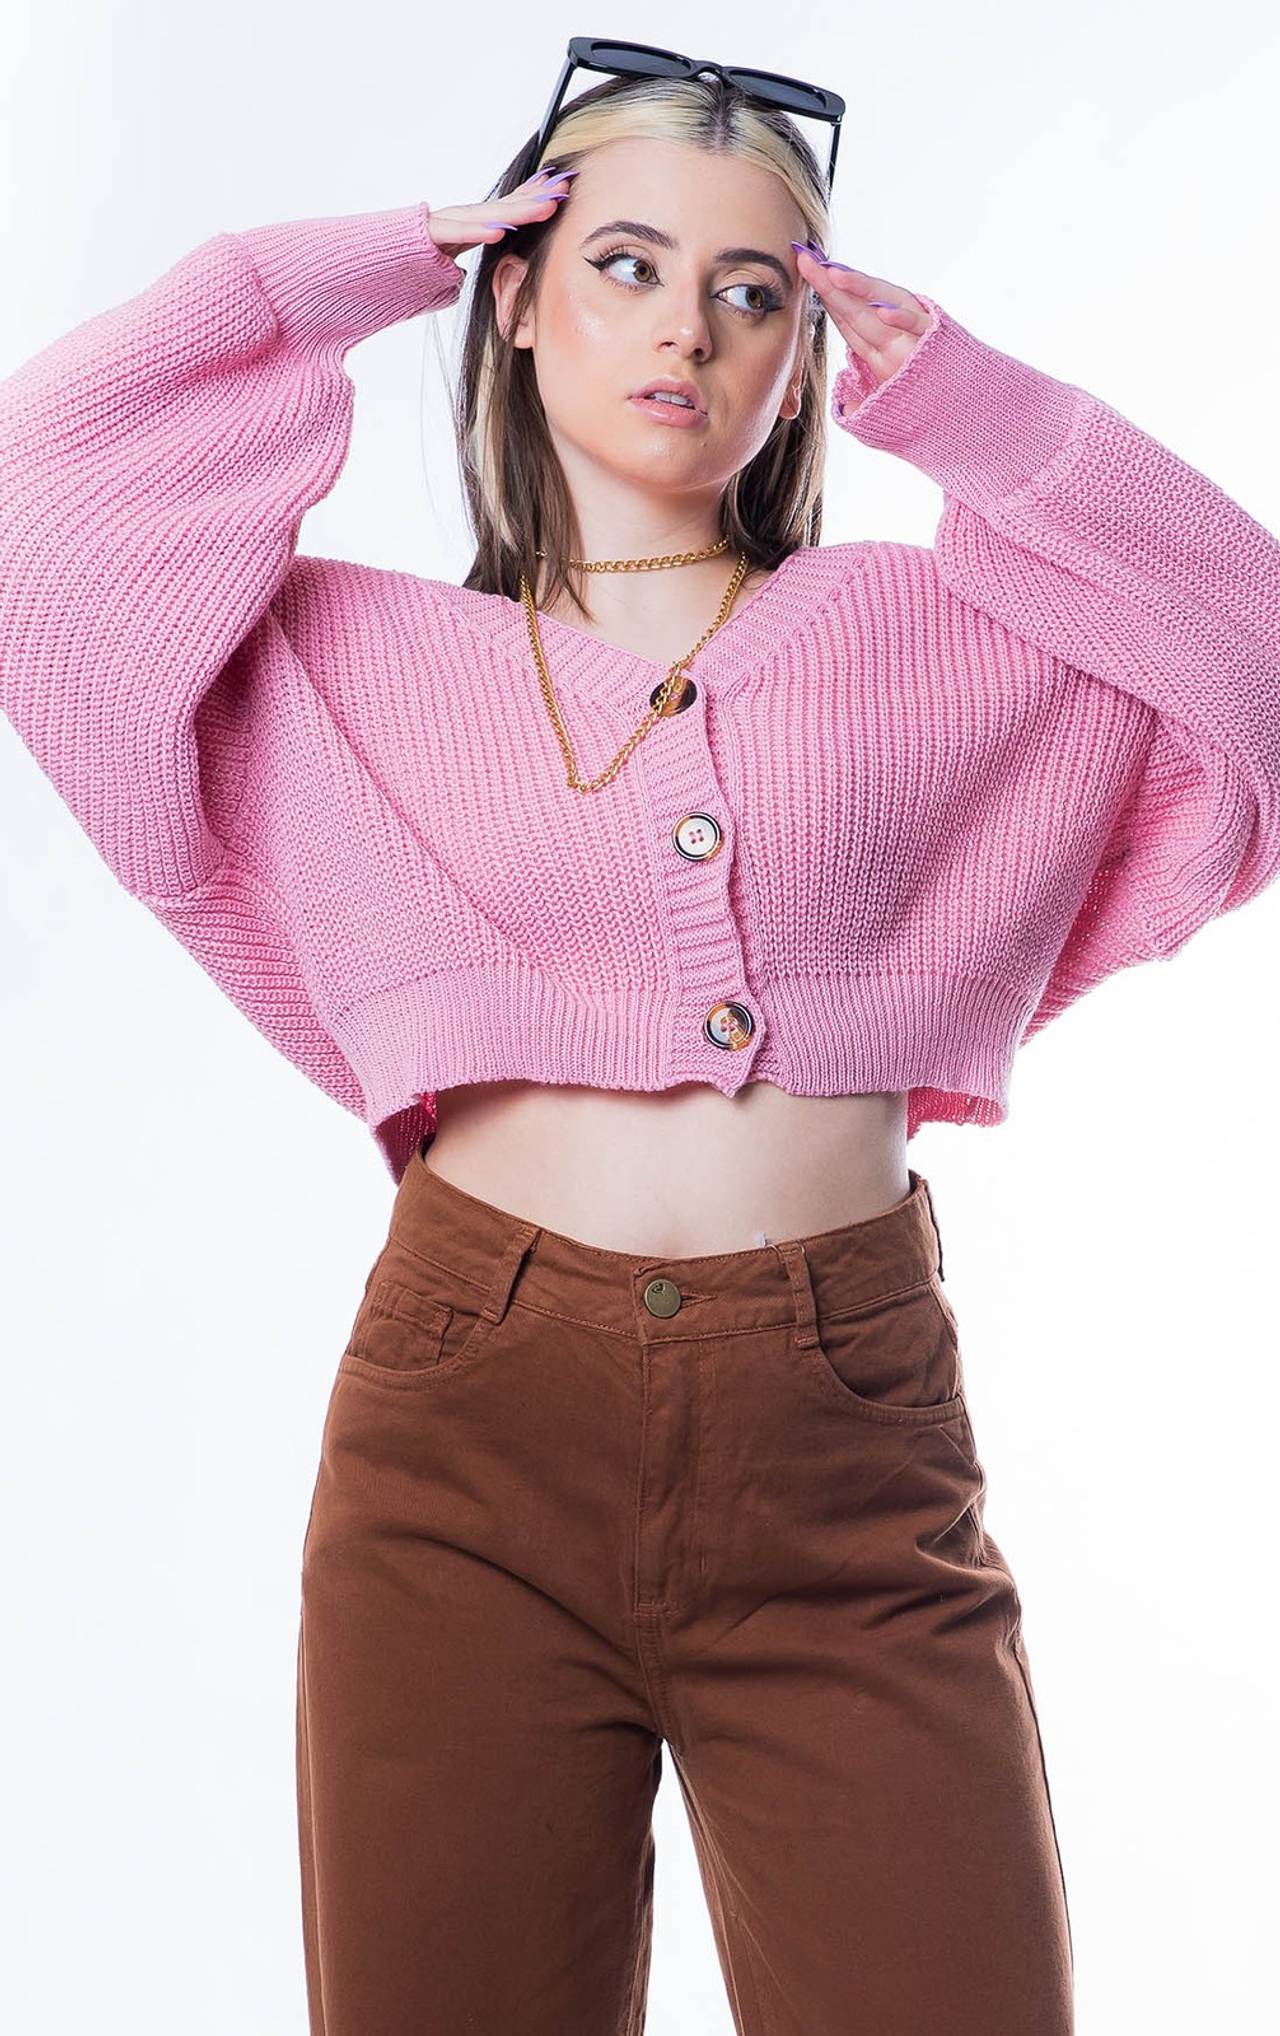 modelo posando com um tricot rosa e uma calça marrom